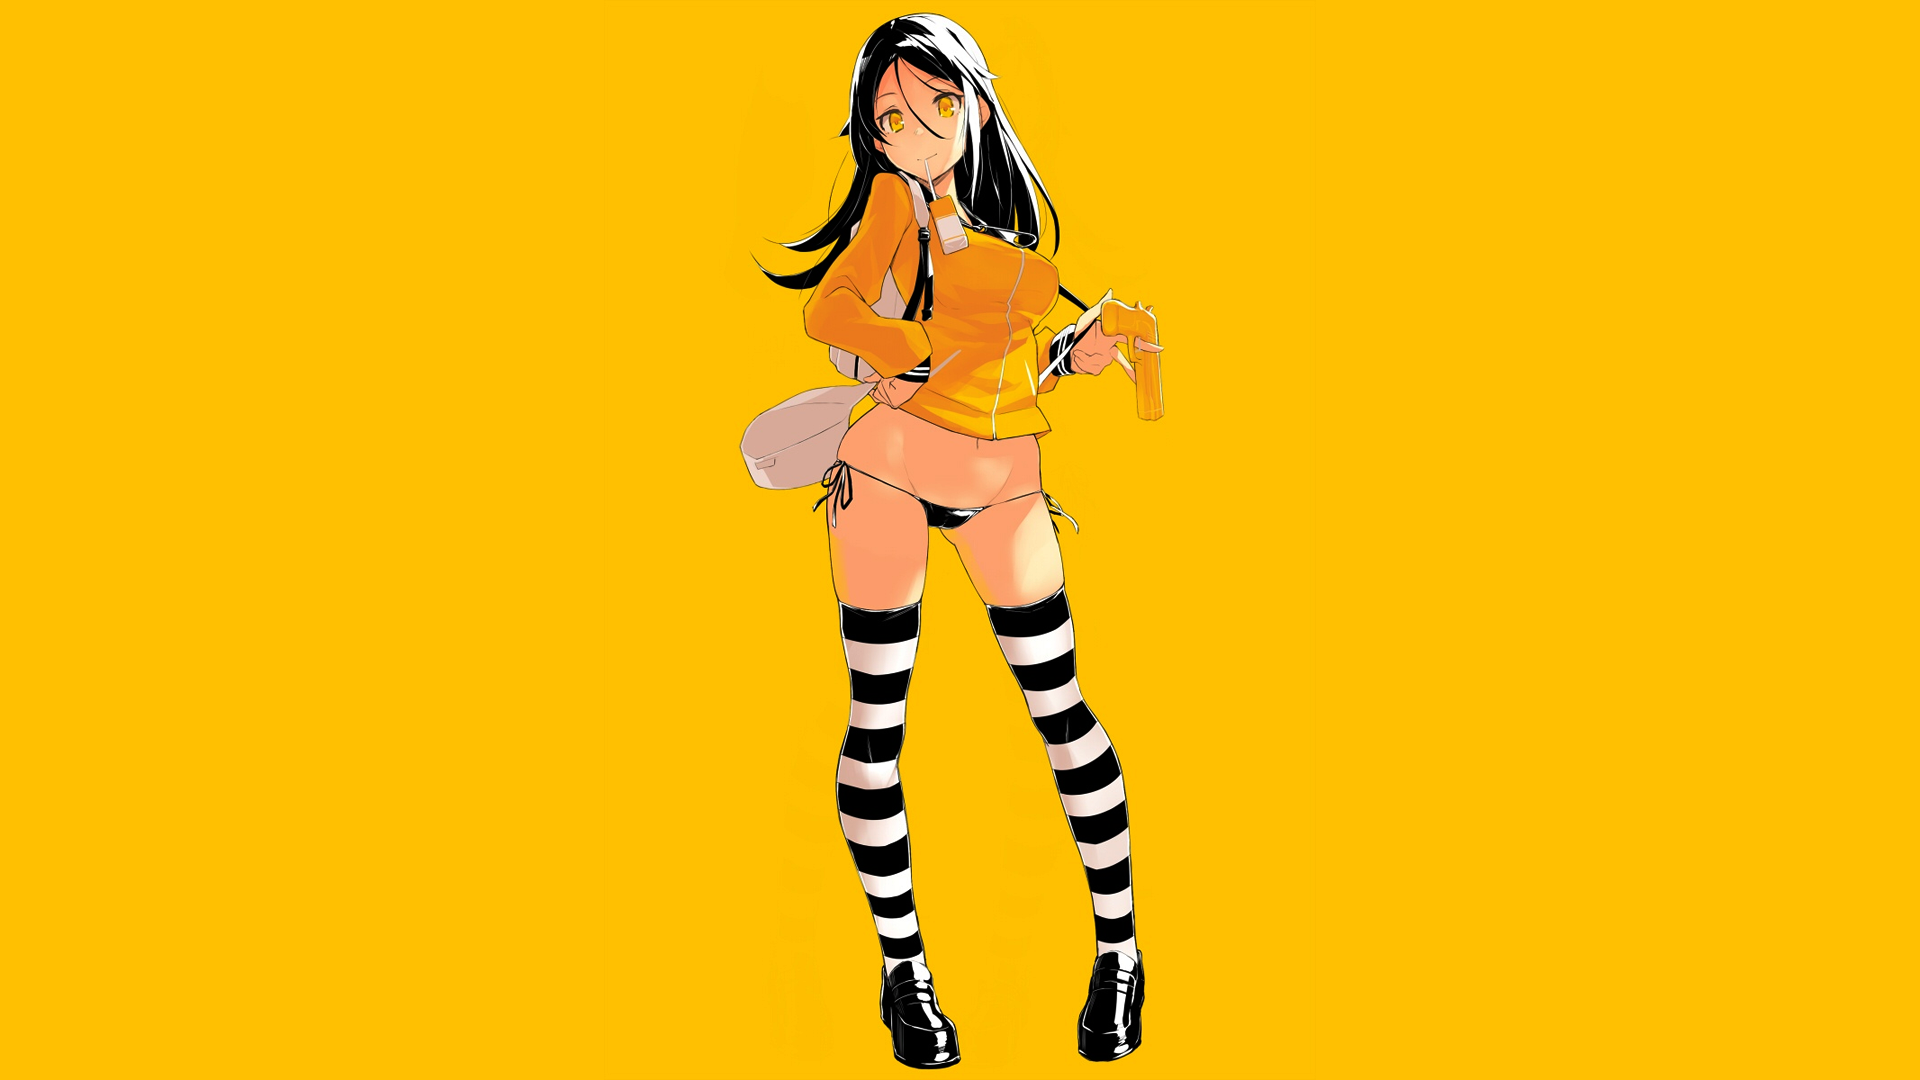 Anime 1920x1080 anime manga anime girls simple background minimalism panties stockings yellow black hair original characters striped stockings